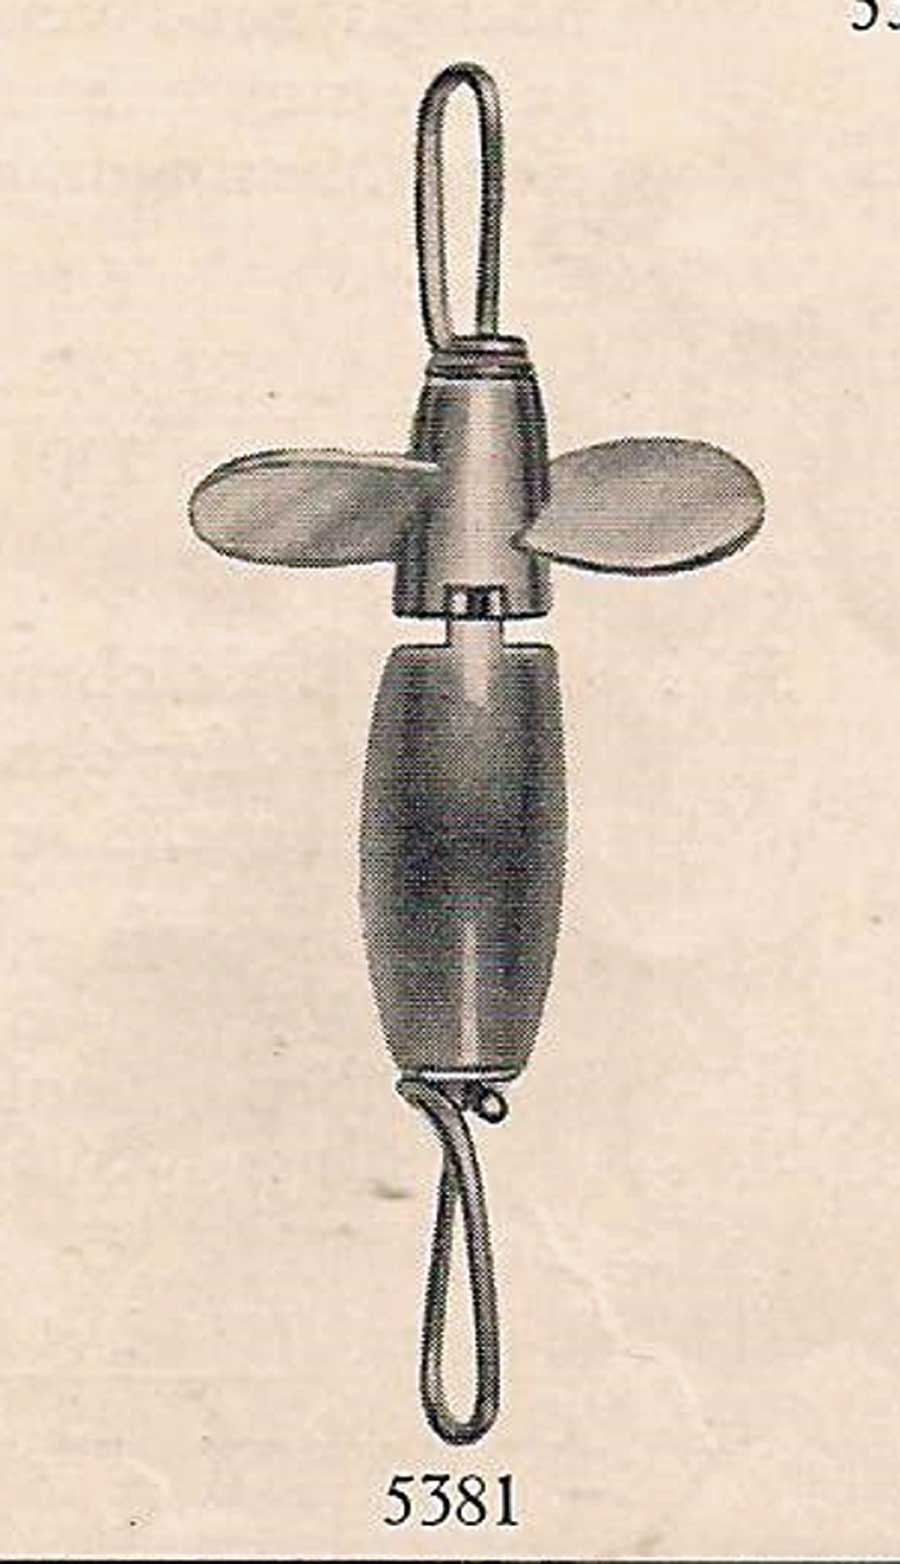 Neuheit im DAM-Katalog von 1933: Ausgeliefert wurde der Mirakel-Spinner in der Regel ohne Drilling.